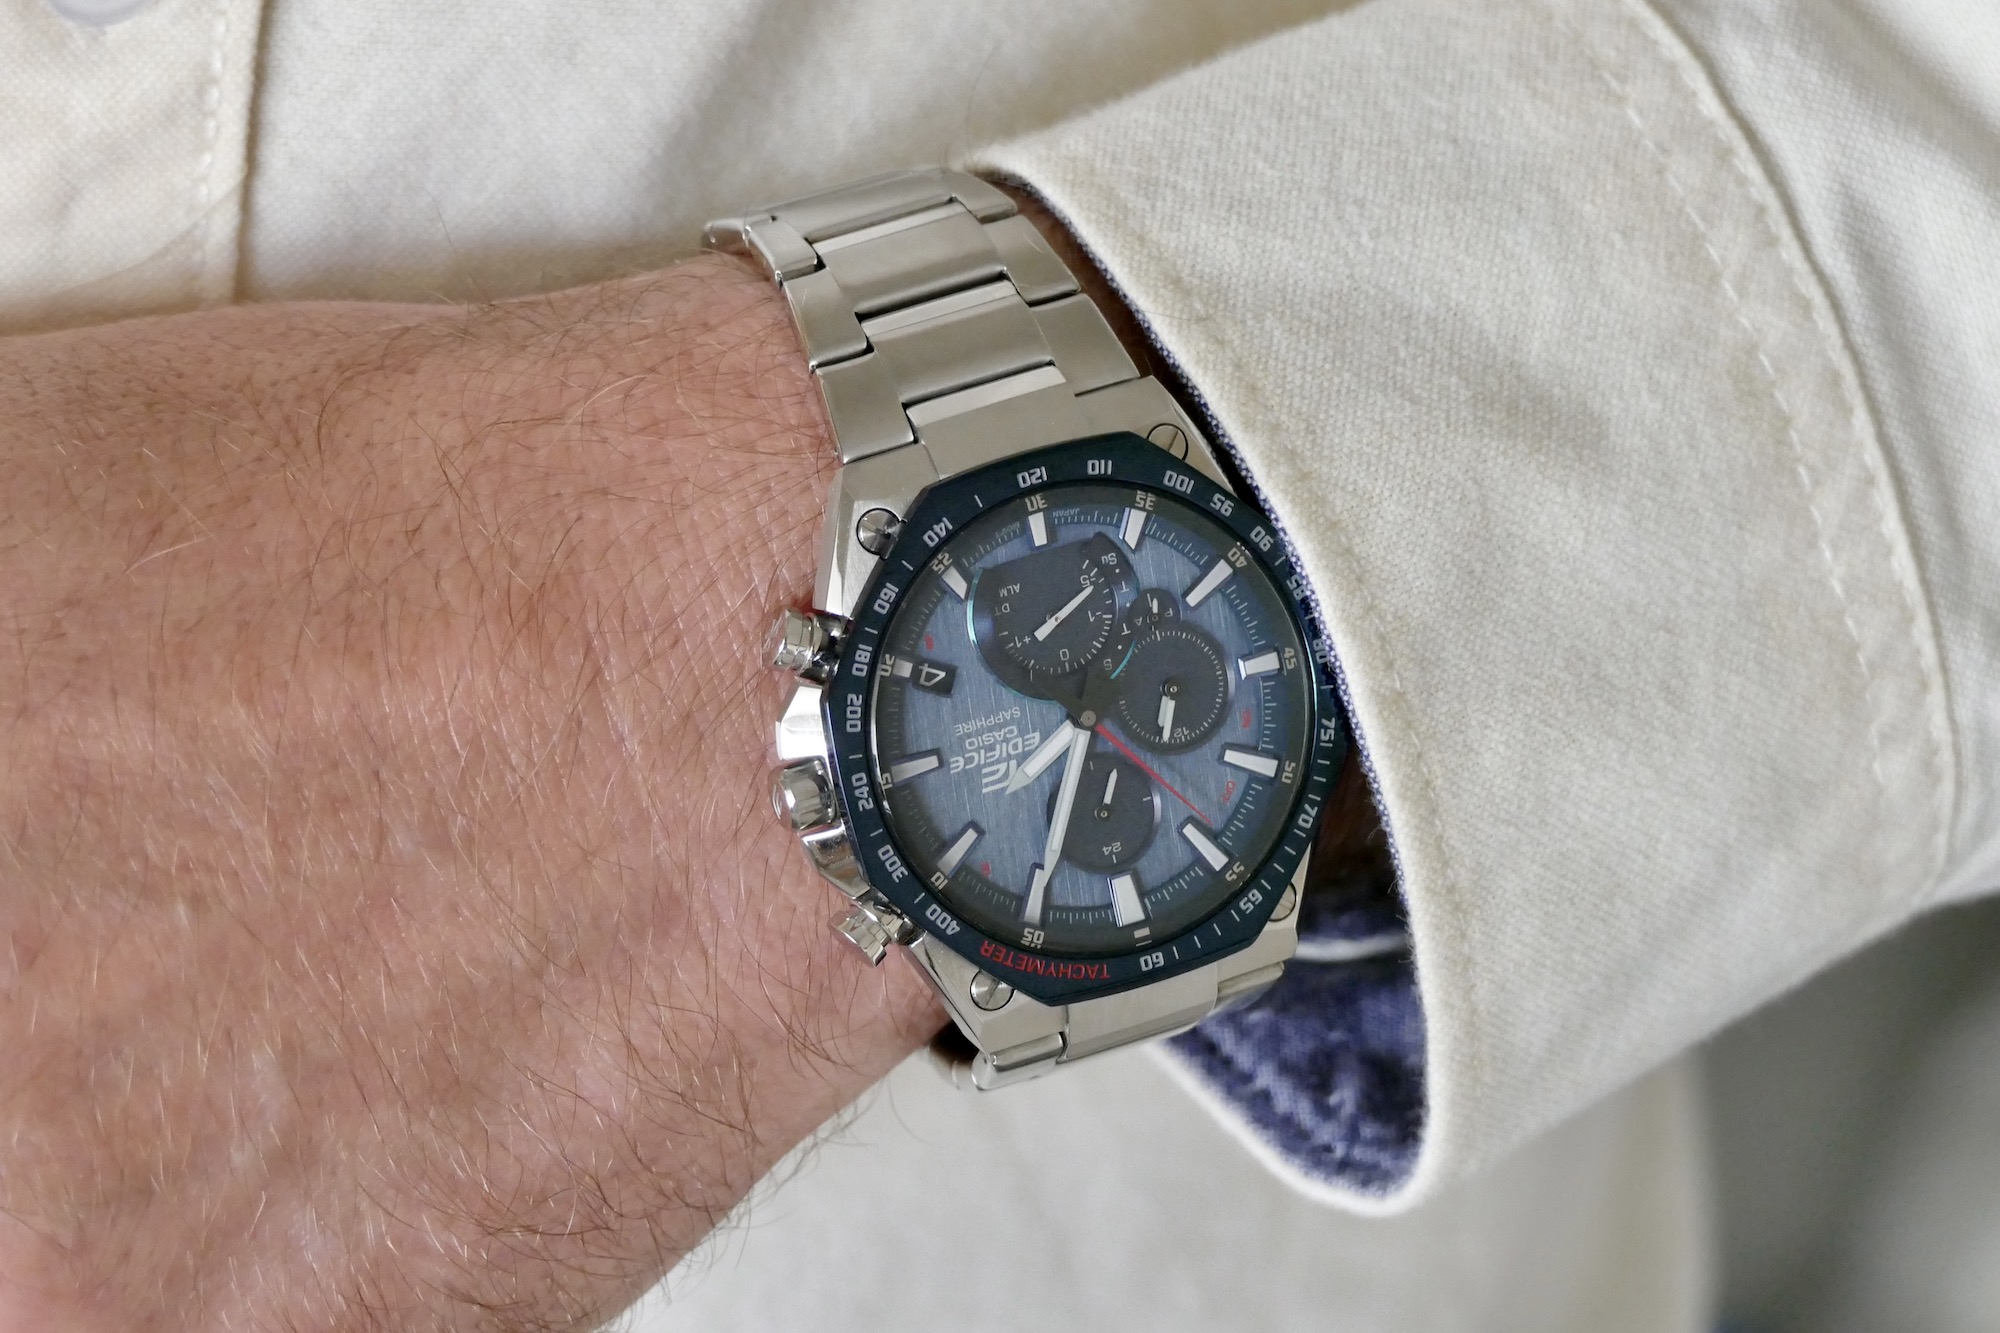 File:Casio Edifice EQB-1100D-1A wrist watch.jpg - Wikipedia